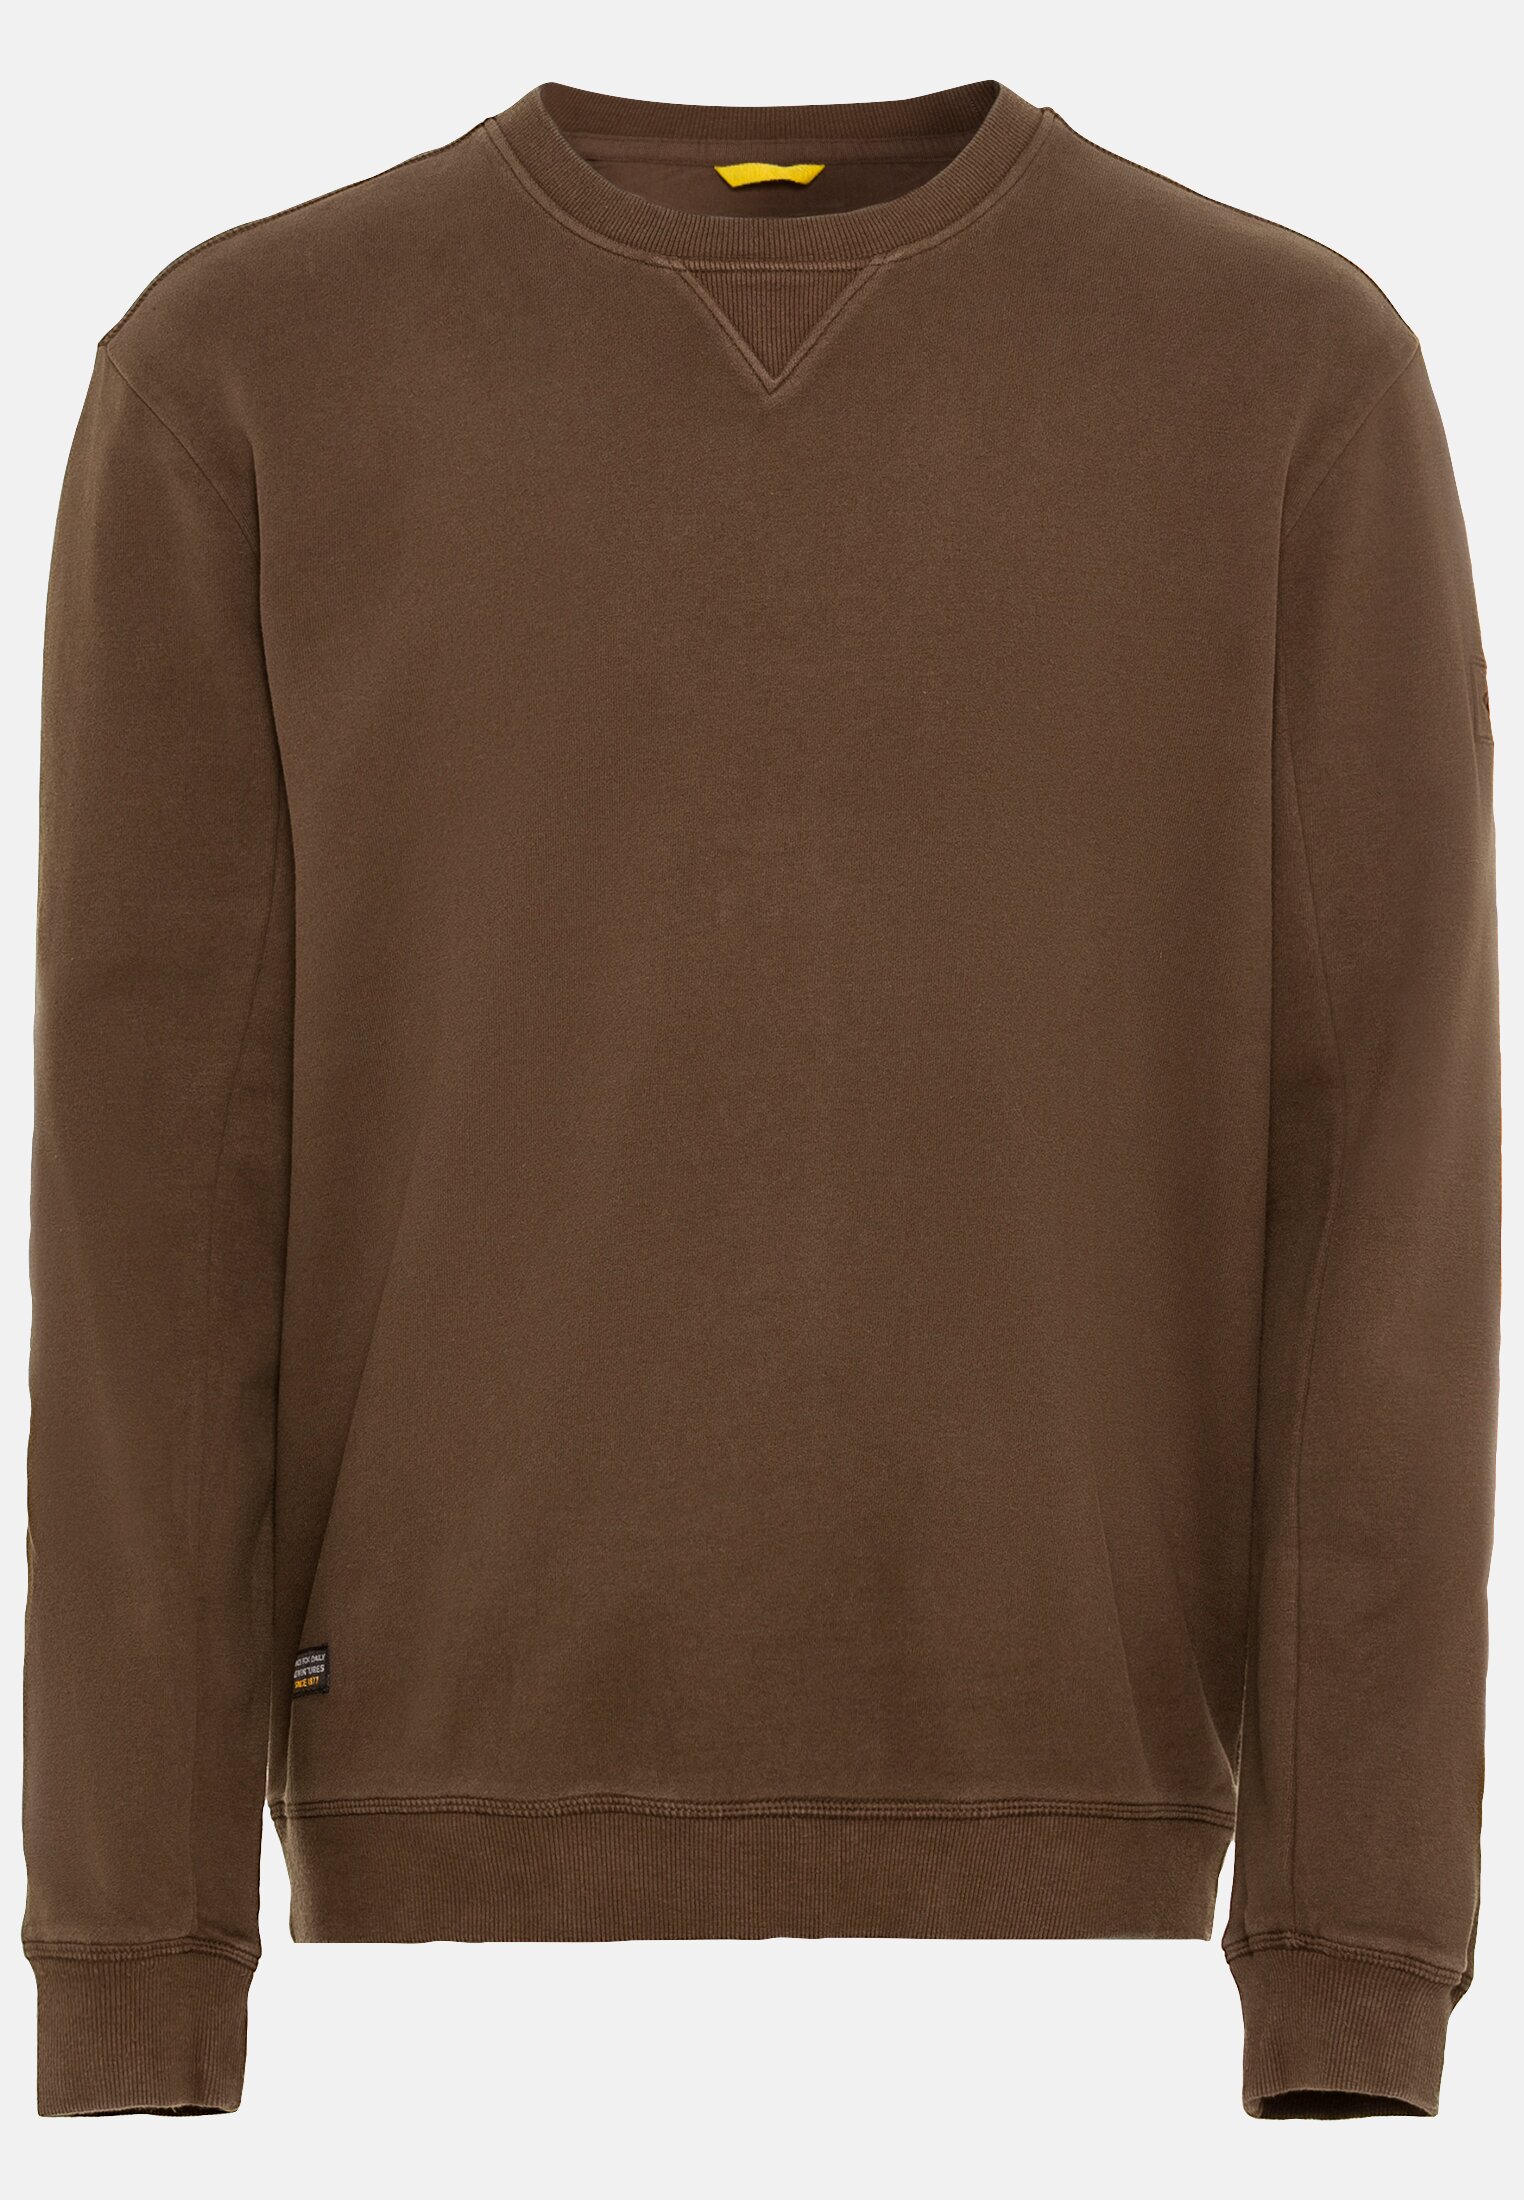 Verkaufskraft Sweatshirt for | | camel in active Herren XXL Brown